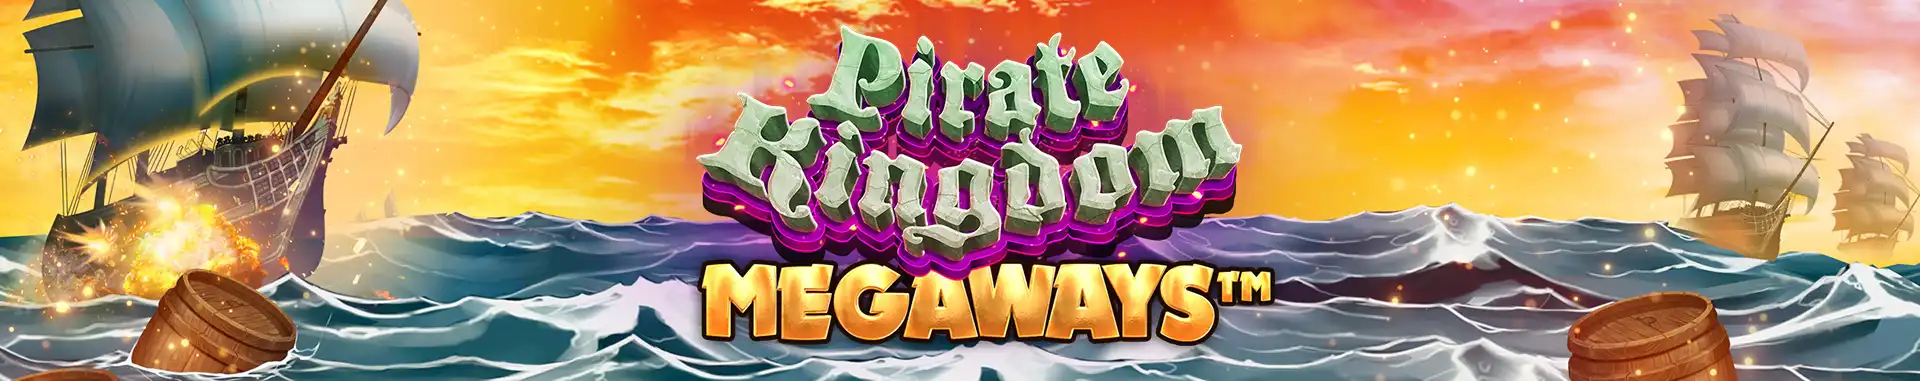 Tragaperras online Pirate Kingdom Megaways